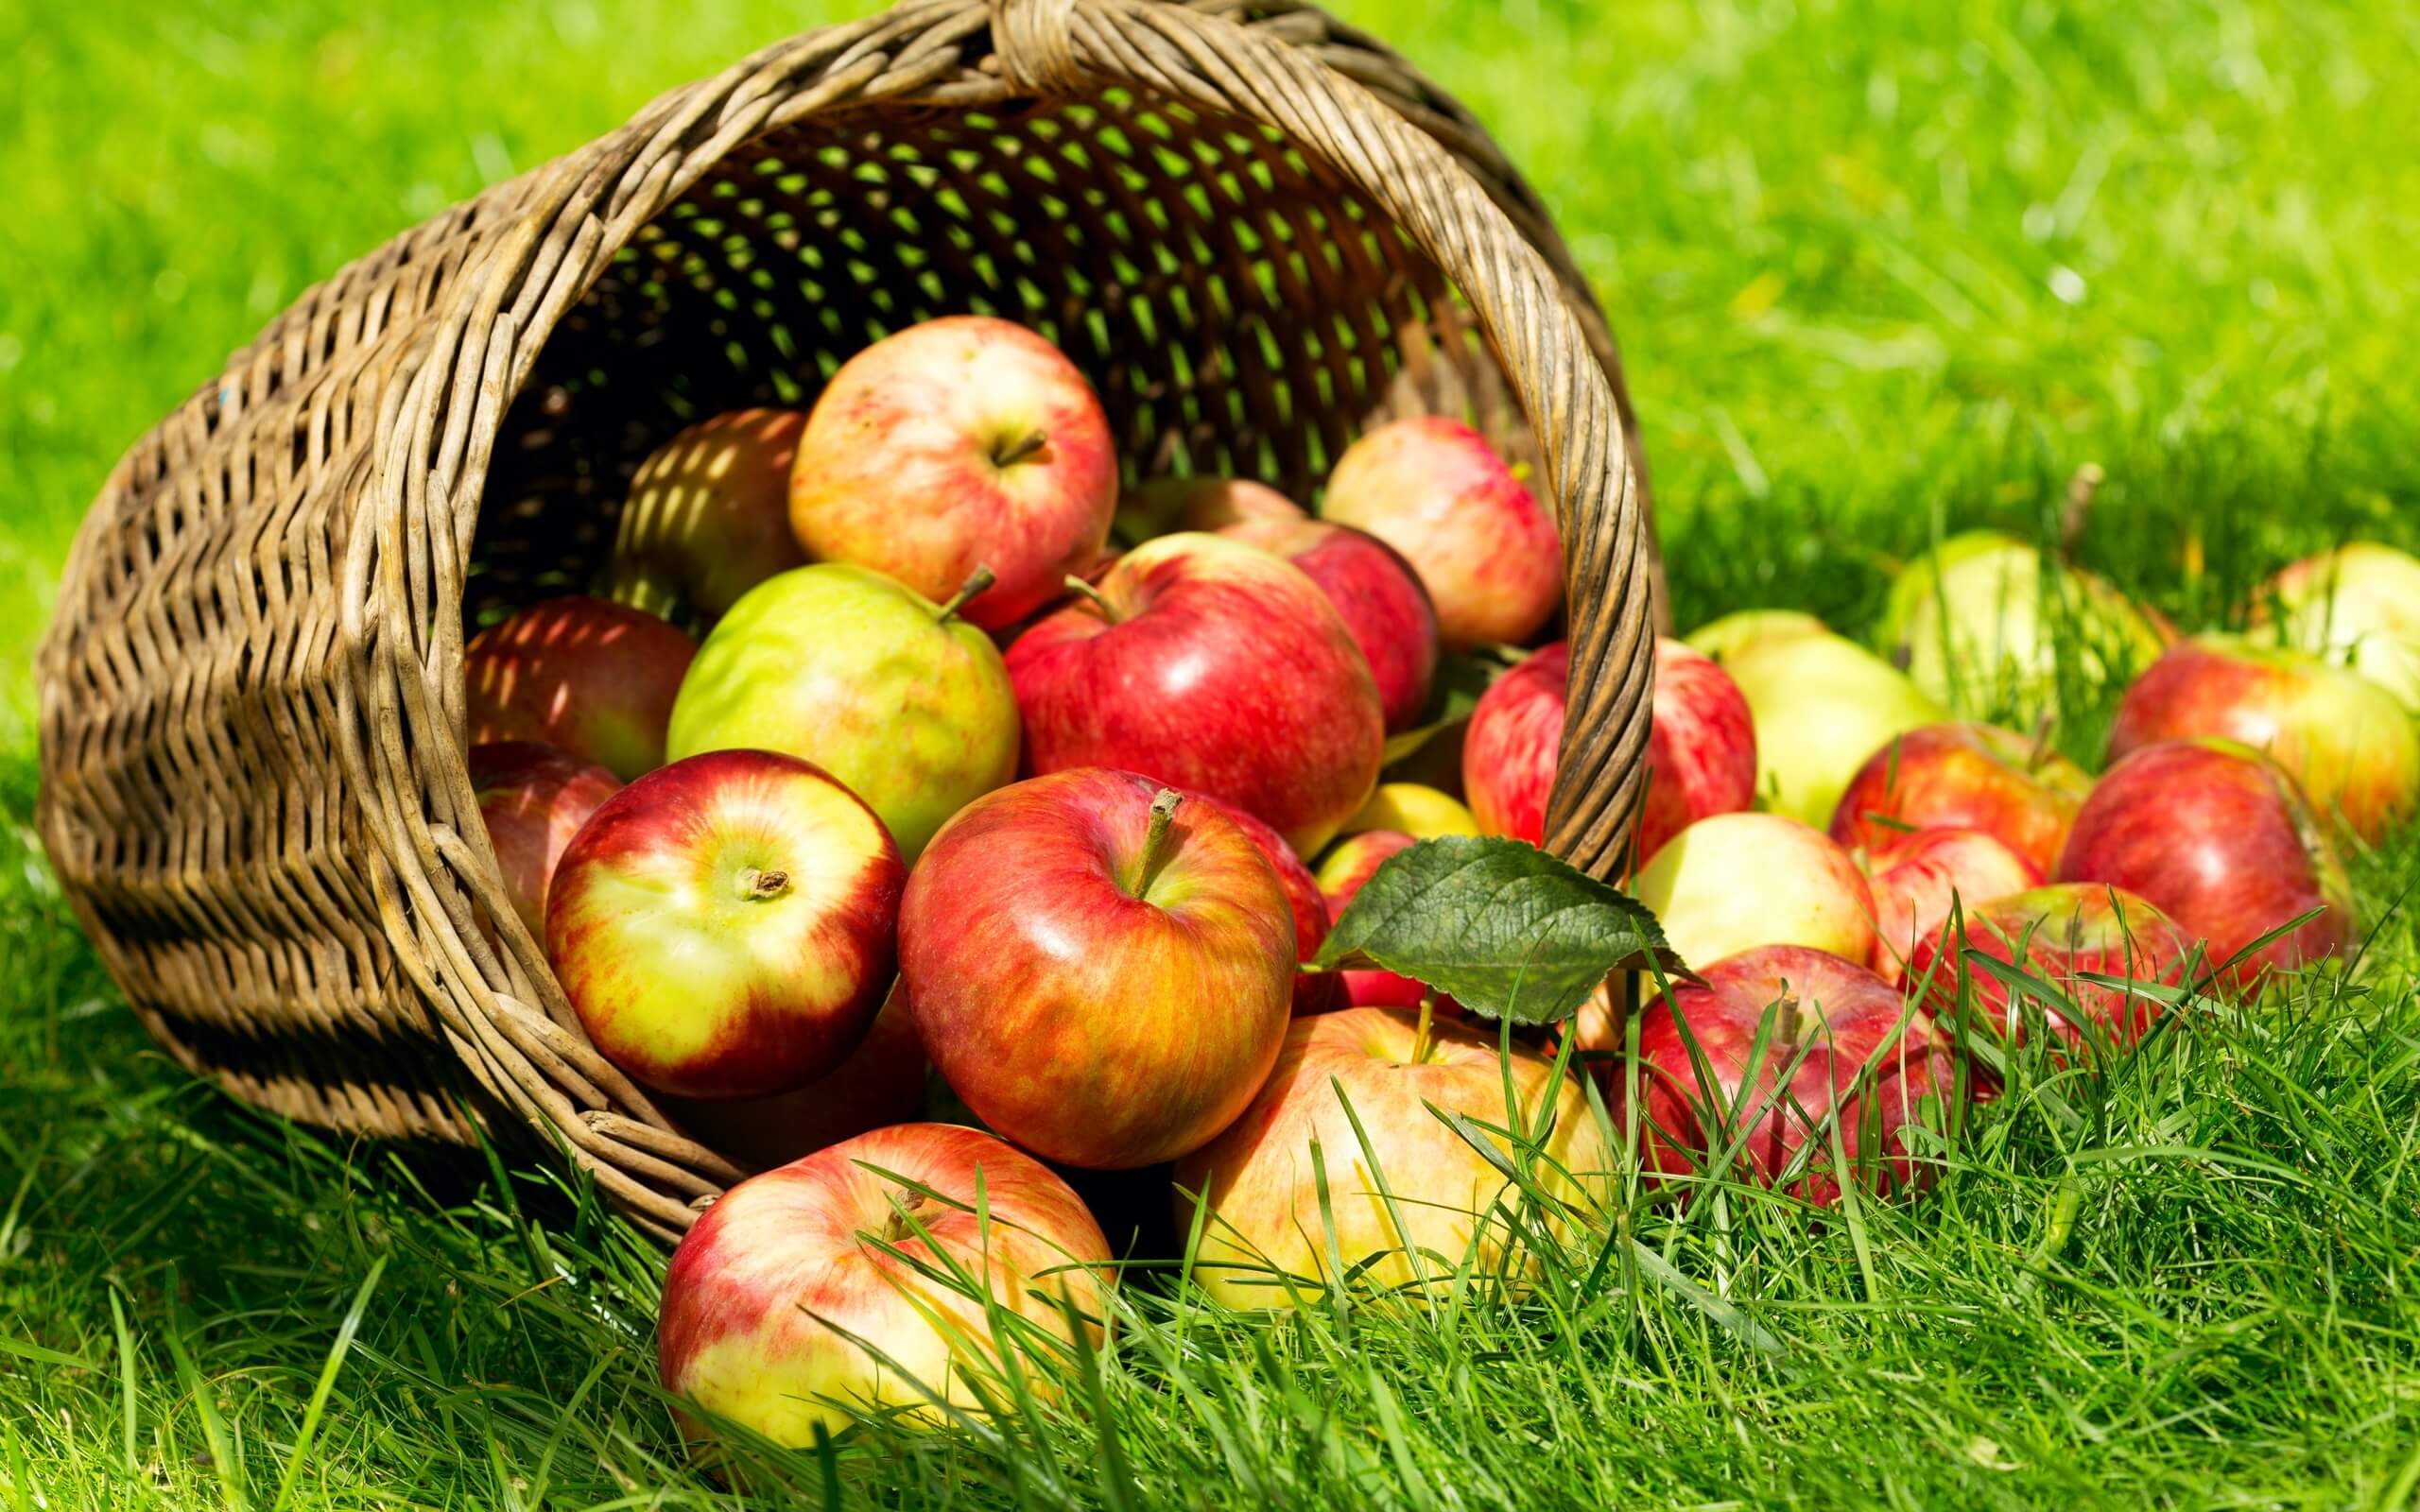 Снятся спелые наливные яблоки на дереве. К чему снятся яблоки женщине: сонник красные, зеленые, большие, собранные и спелые яблочки